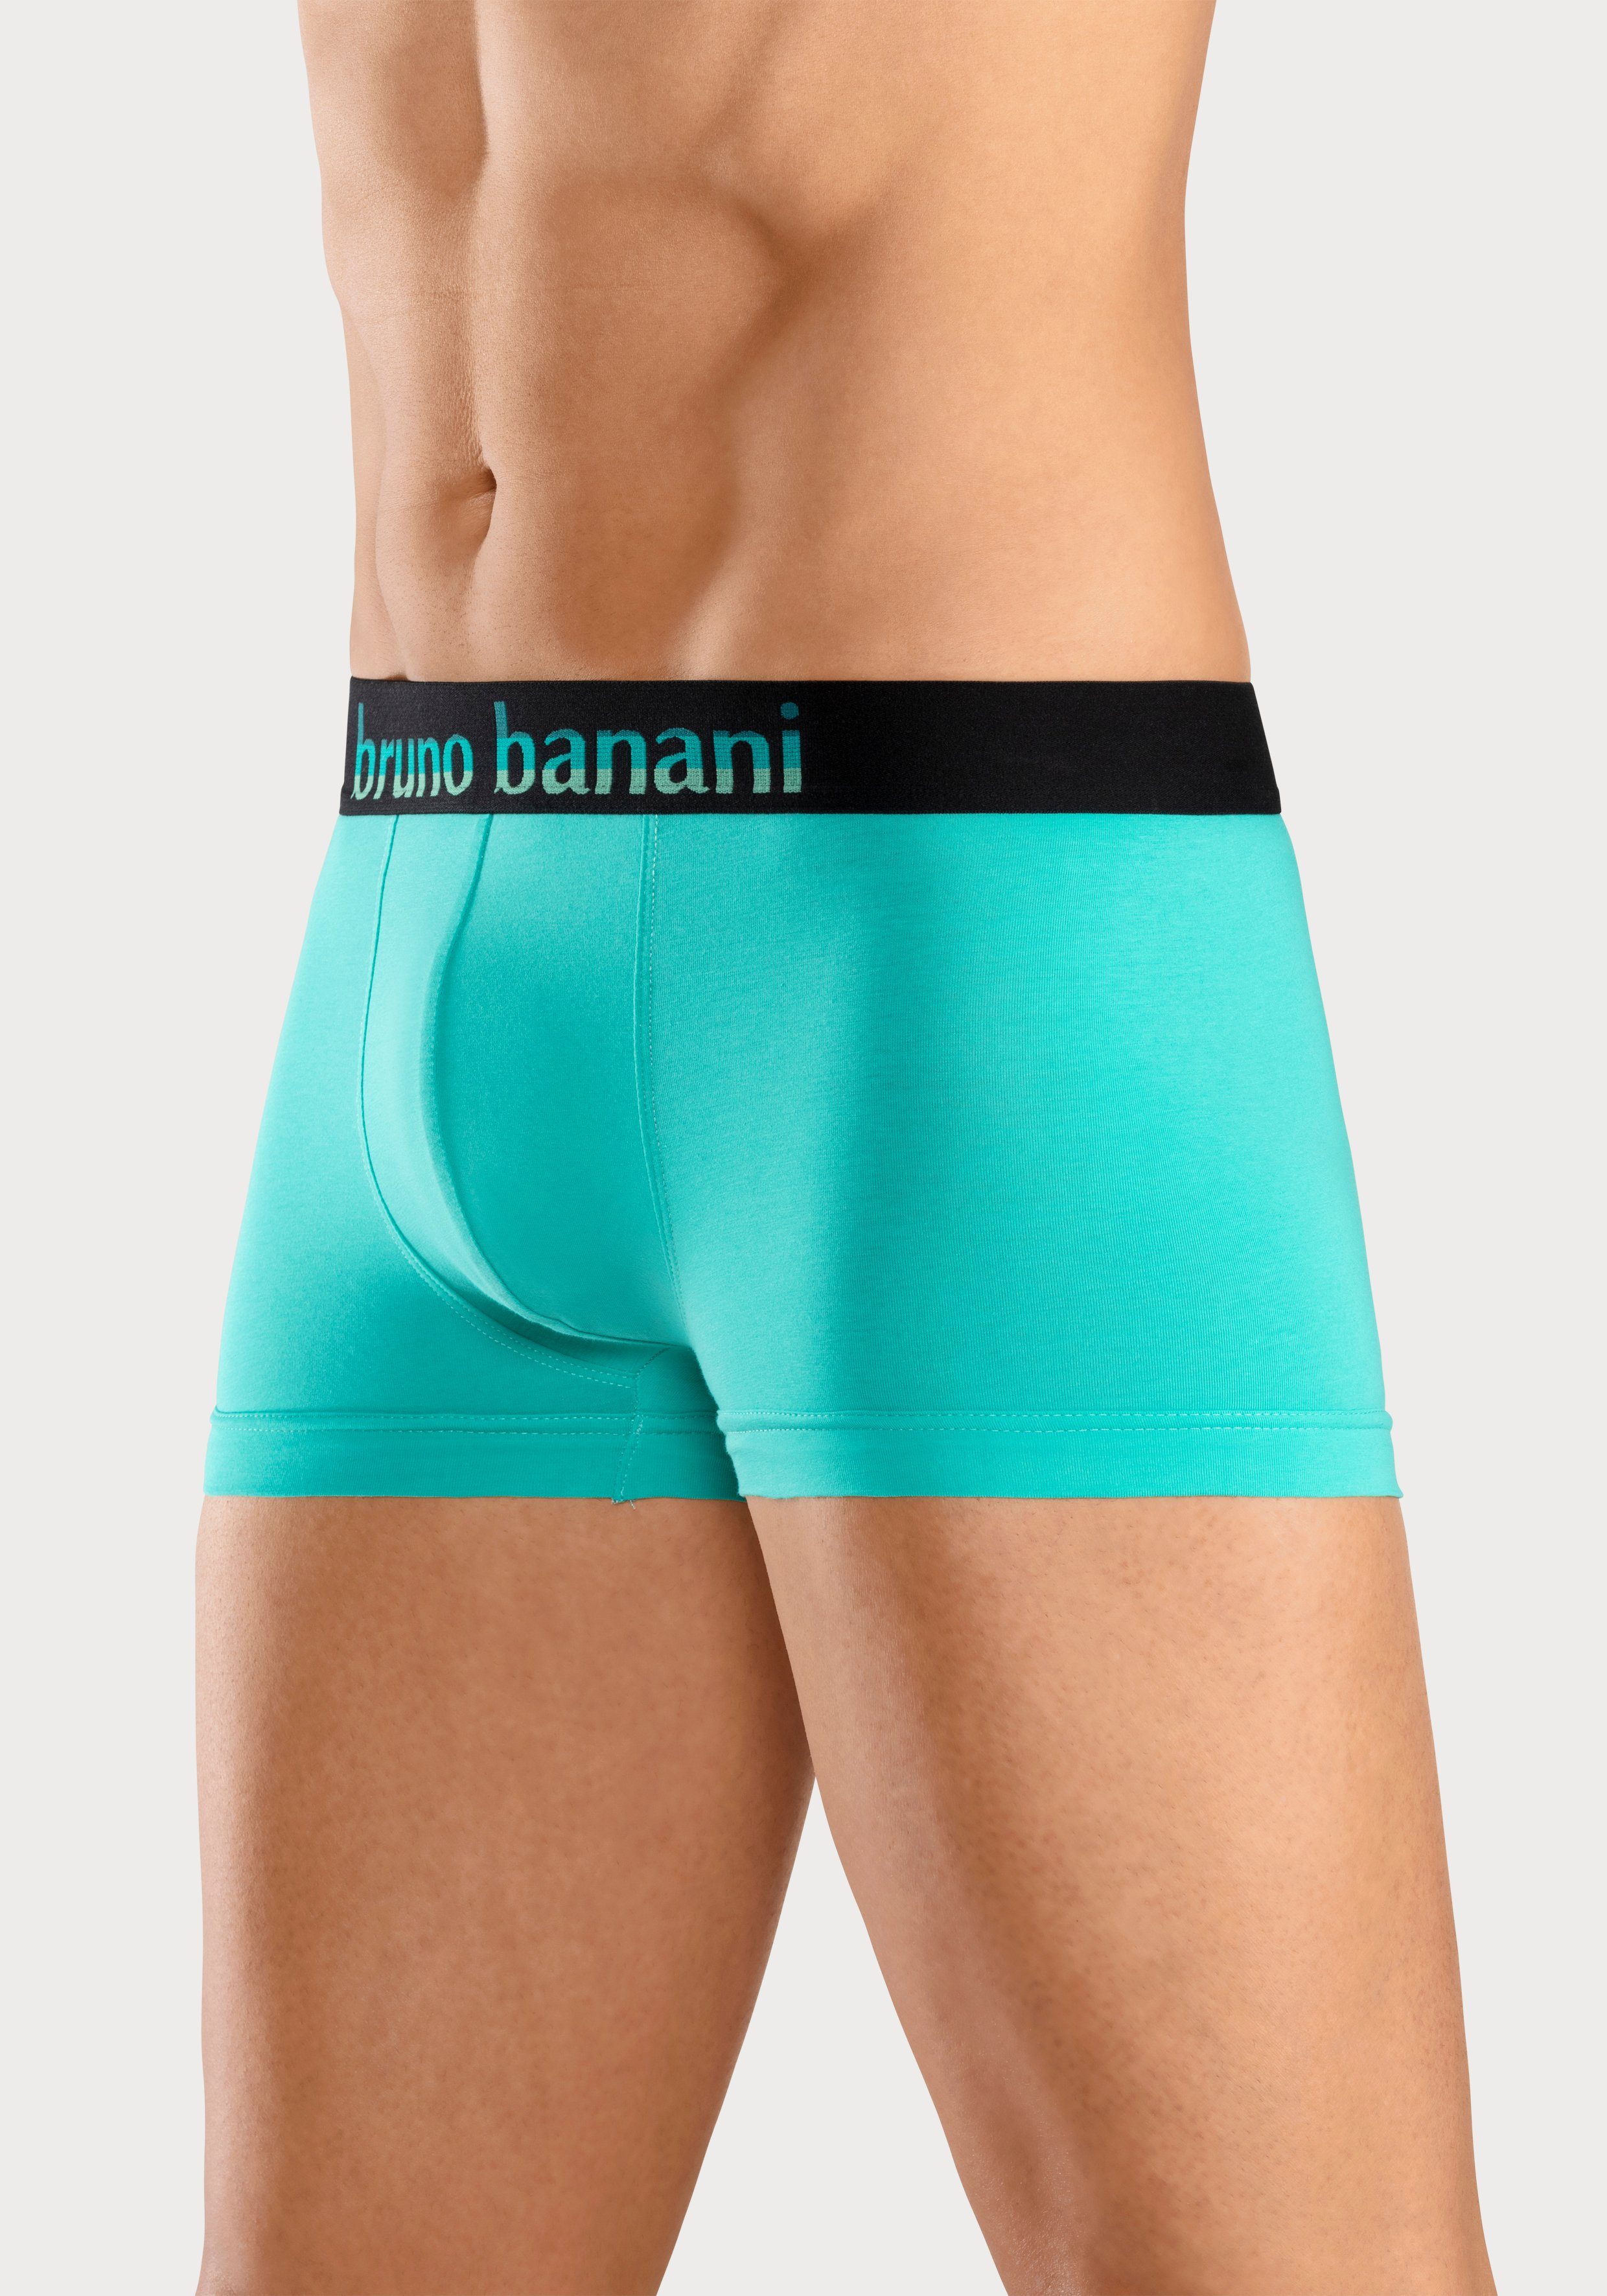 Bruno Banani Boxer (Packung, pink, Logo gelb, mit blau, Streifen 5-St) Webbund schwarz mint